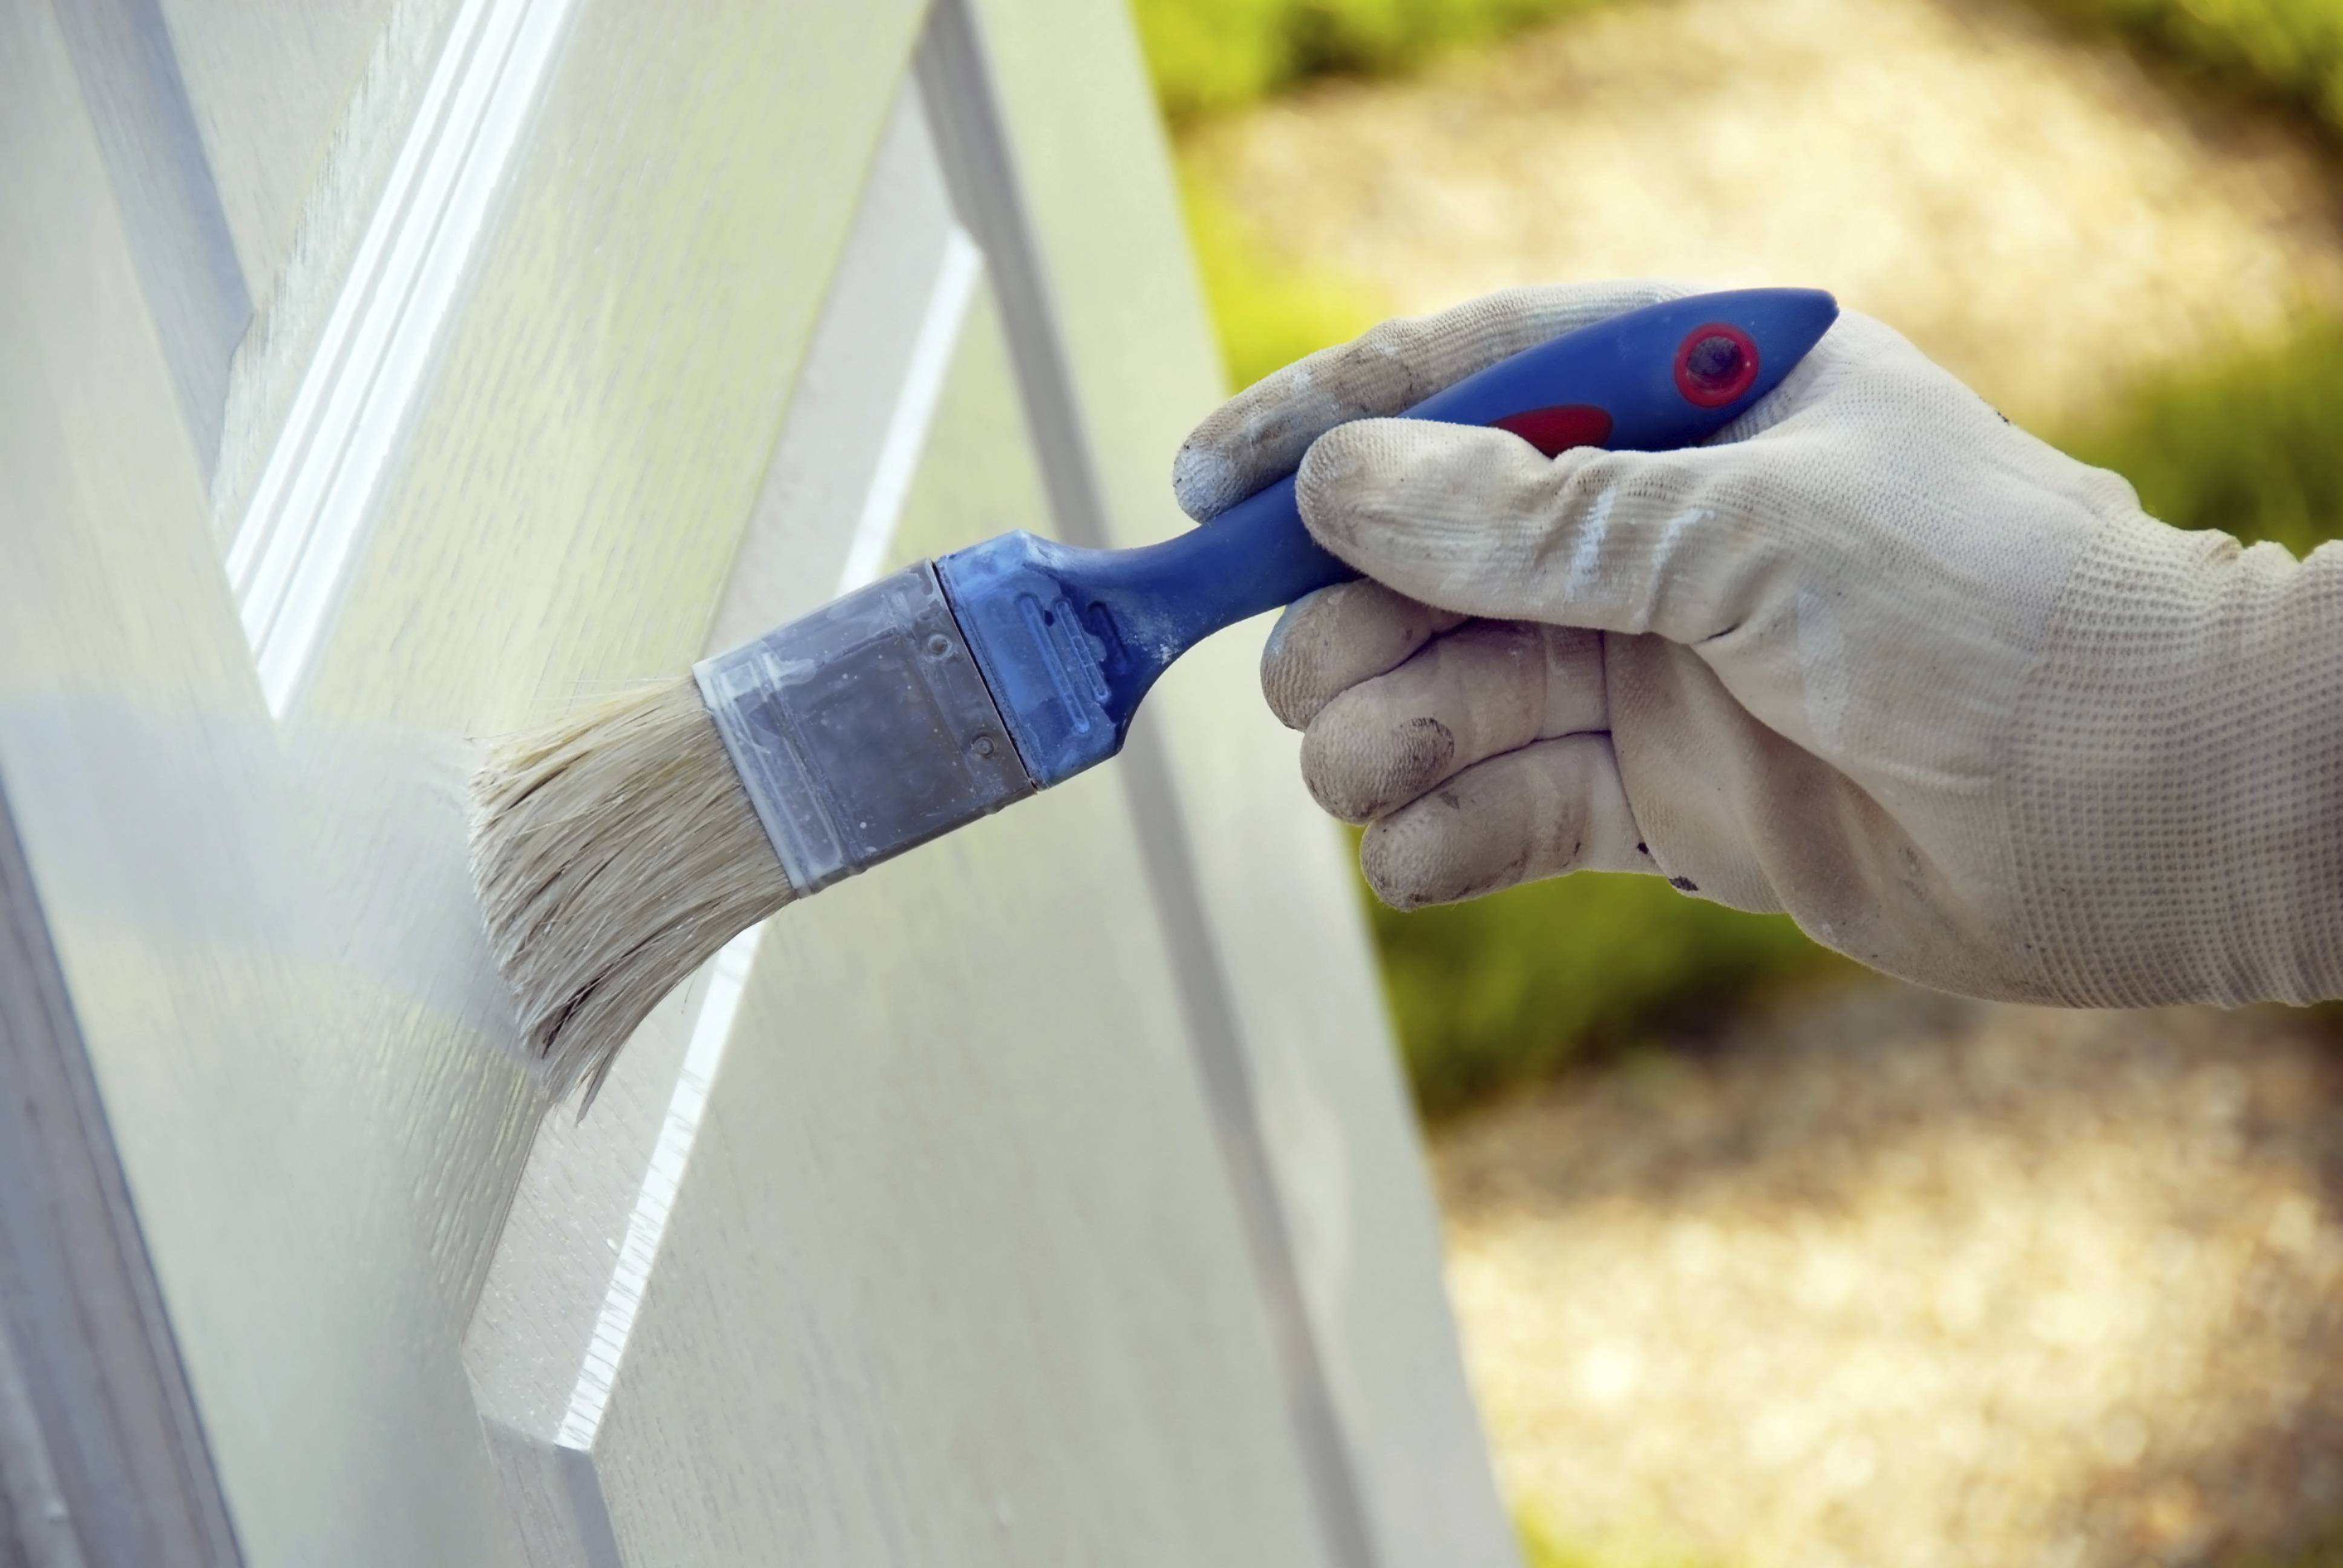 Покраска деревянных окон: необходимые материалы и пошаговый процесс